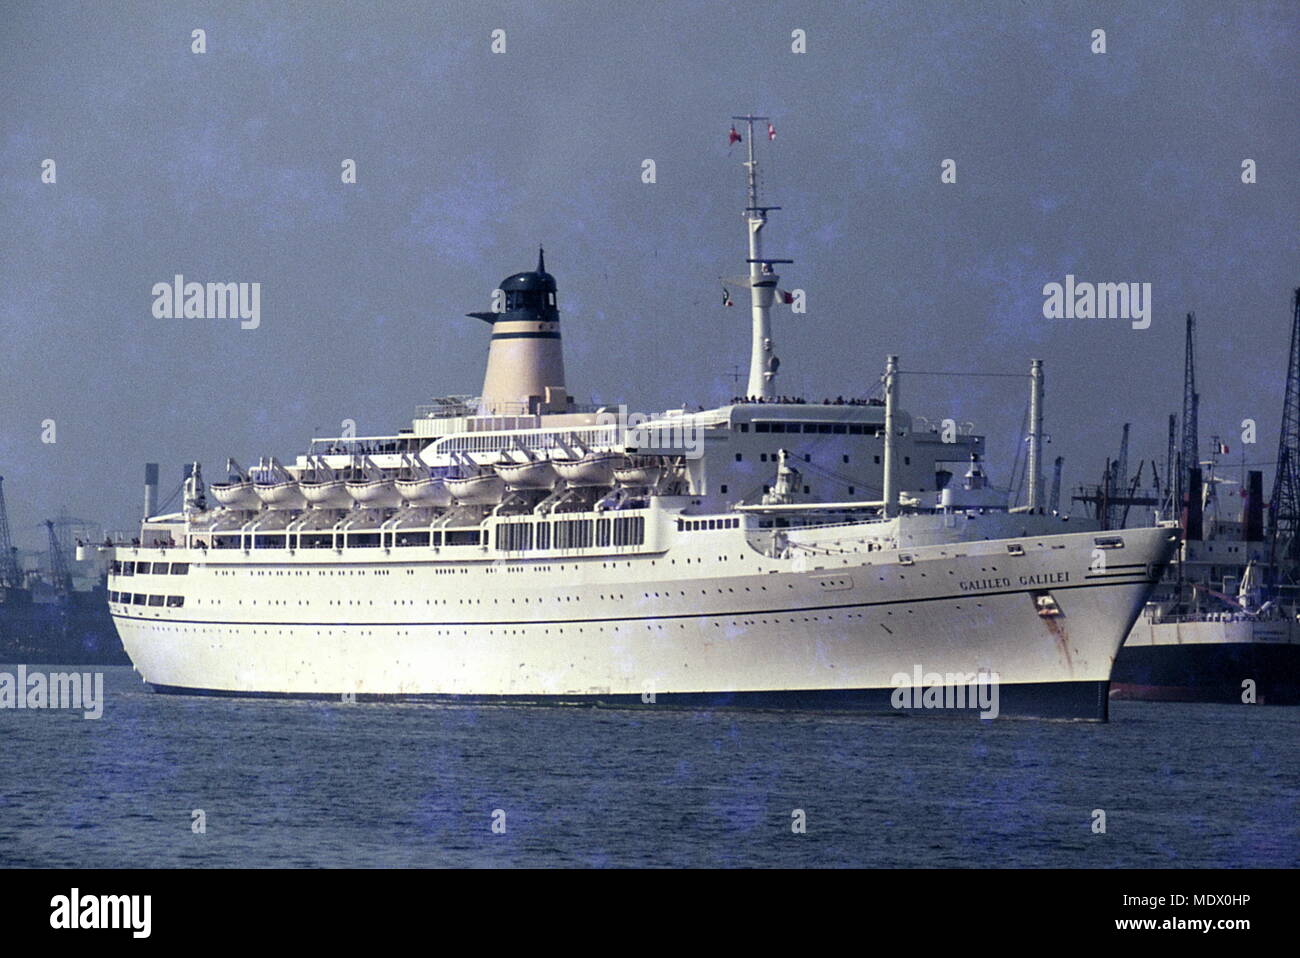 AJAXNETPHOTO. 60er Jahre (ca.). SOUTHAMPTON, England. - SS GALILEO GALILEI WAR EIN OZEAN PASSAGIERSCHIFF gebaut 1963 von CANTIERI RIUNITI DELL'Adriatico, Monfalcone, ITALIEN FÜR LLOYD TRIESTINO IN ITALIEN - AUSTRALIEN SERVICE. Foto: VIV TOWNLEY/AJAX REF: 22412 2 2 Stockfoto